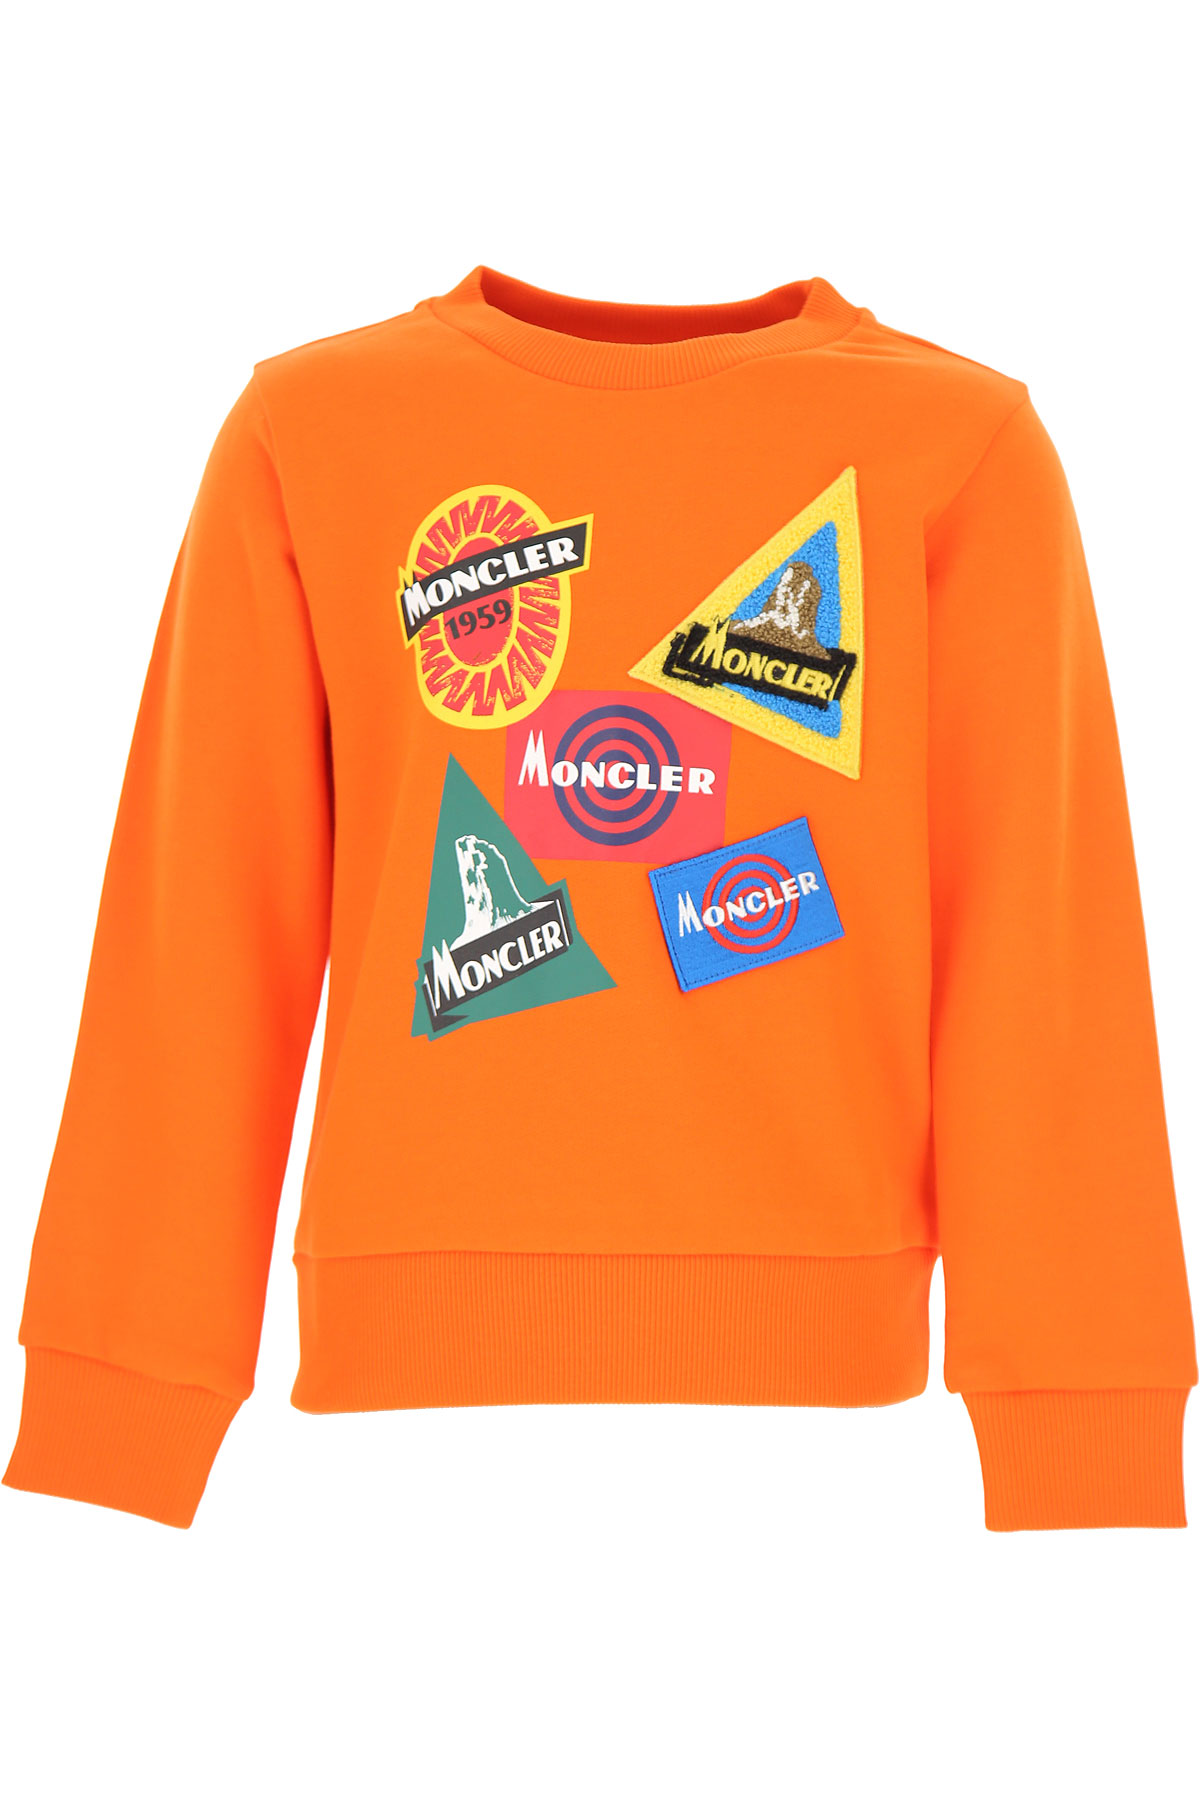 Moncler Kinder Sweatshirt & Kapuzenpullover für Jungen Günstig im Sale, Orange, Baumwolle, 2017, 10Y 8Y